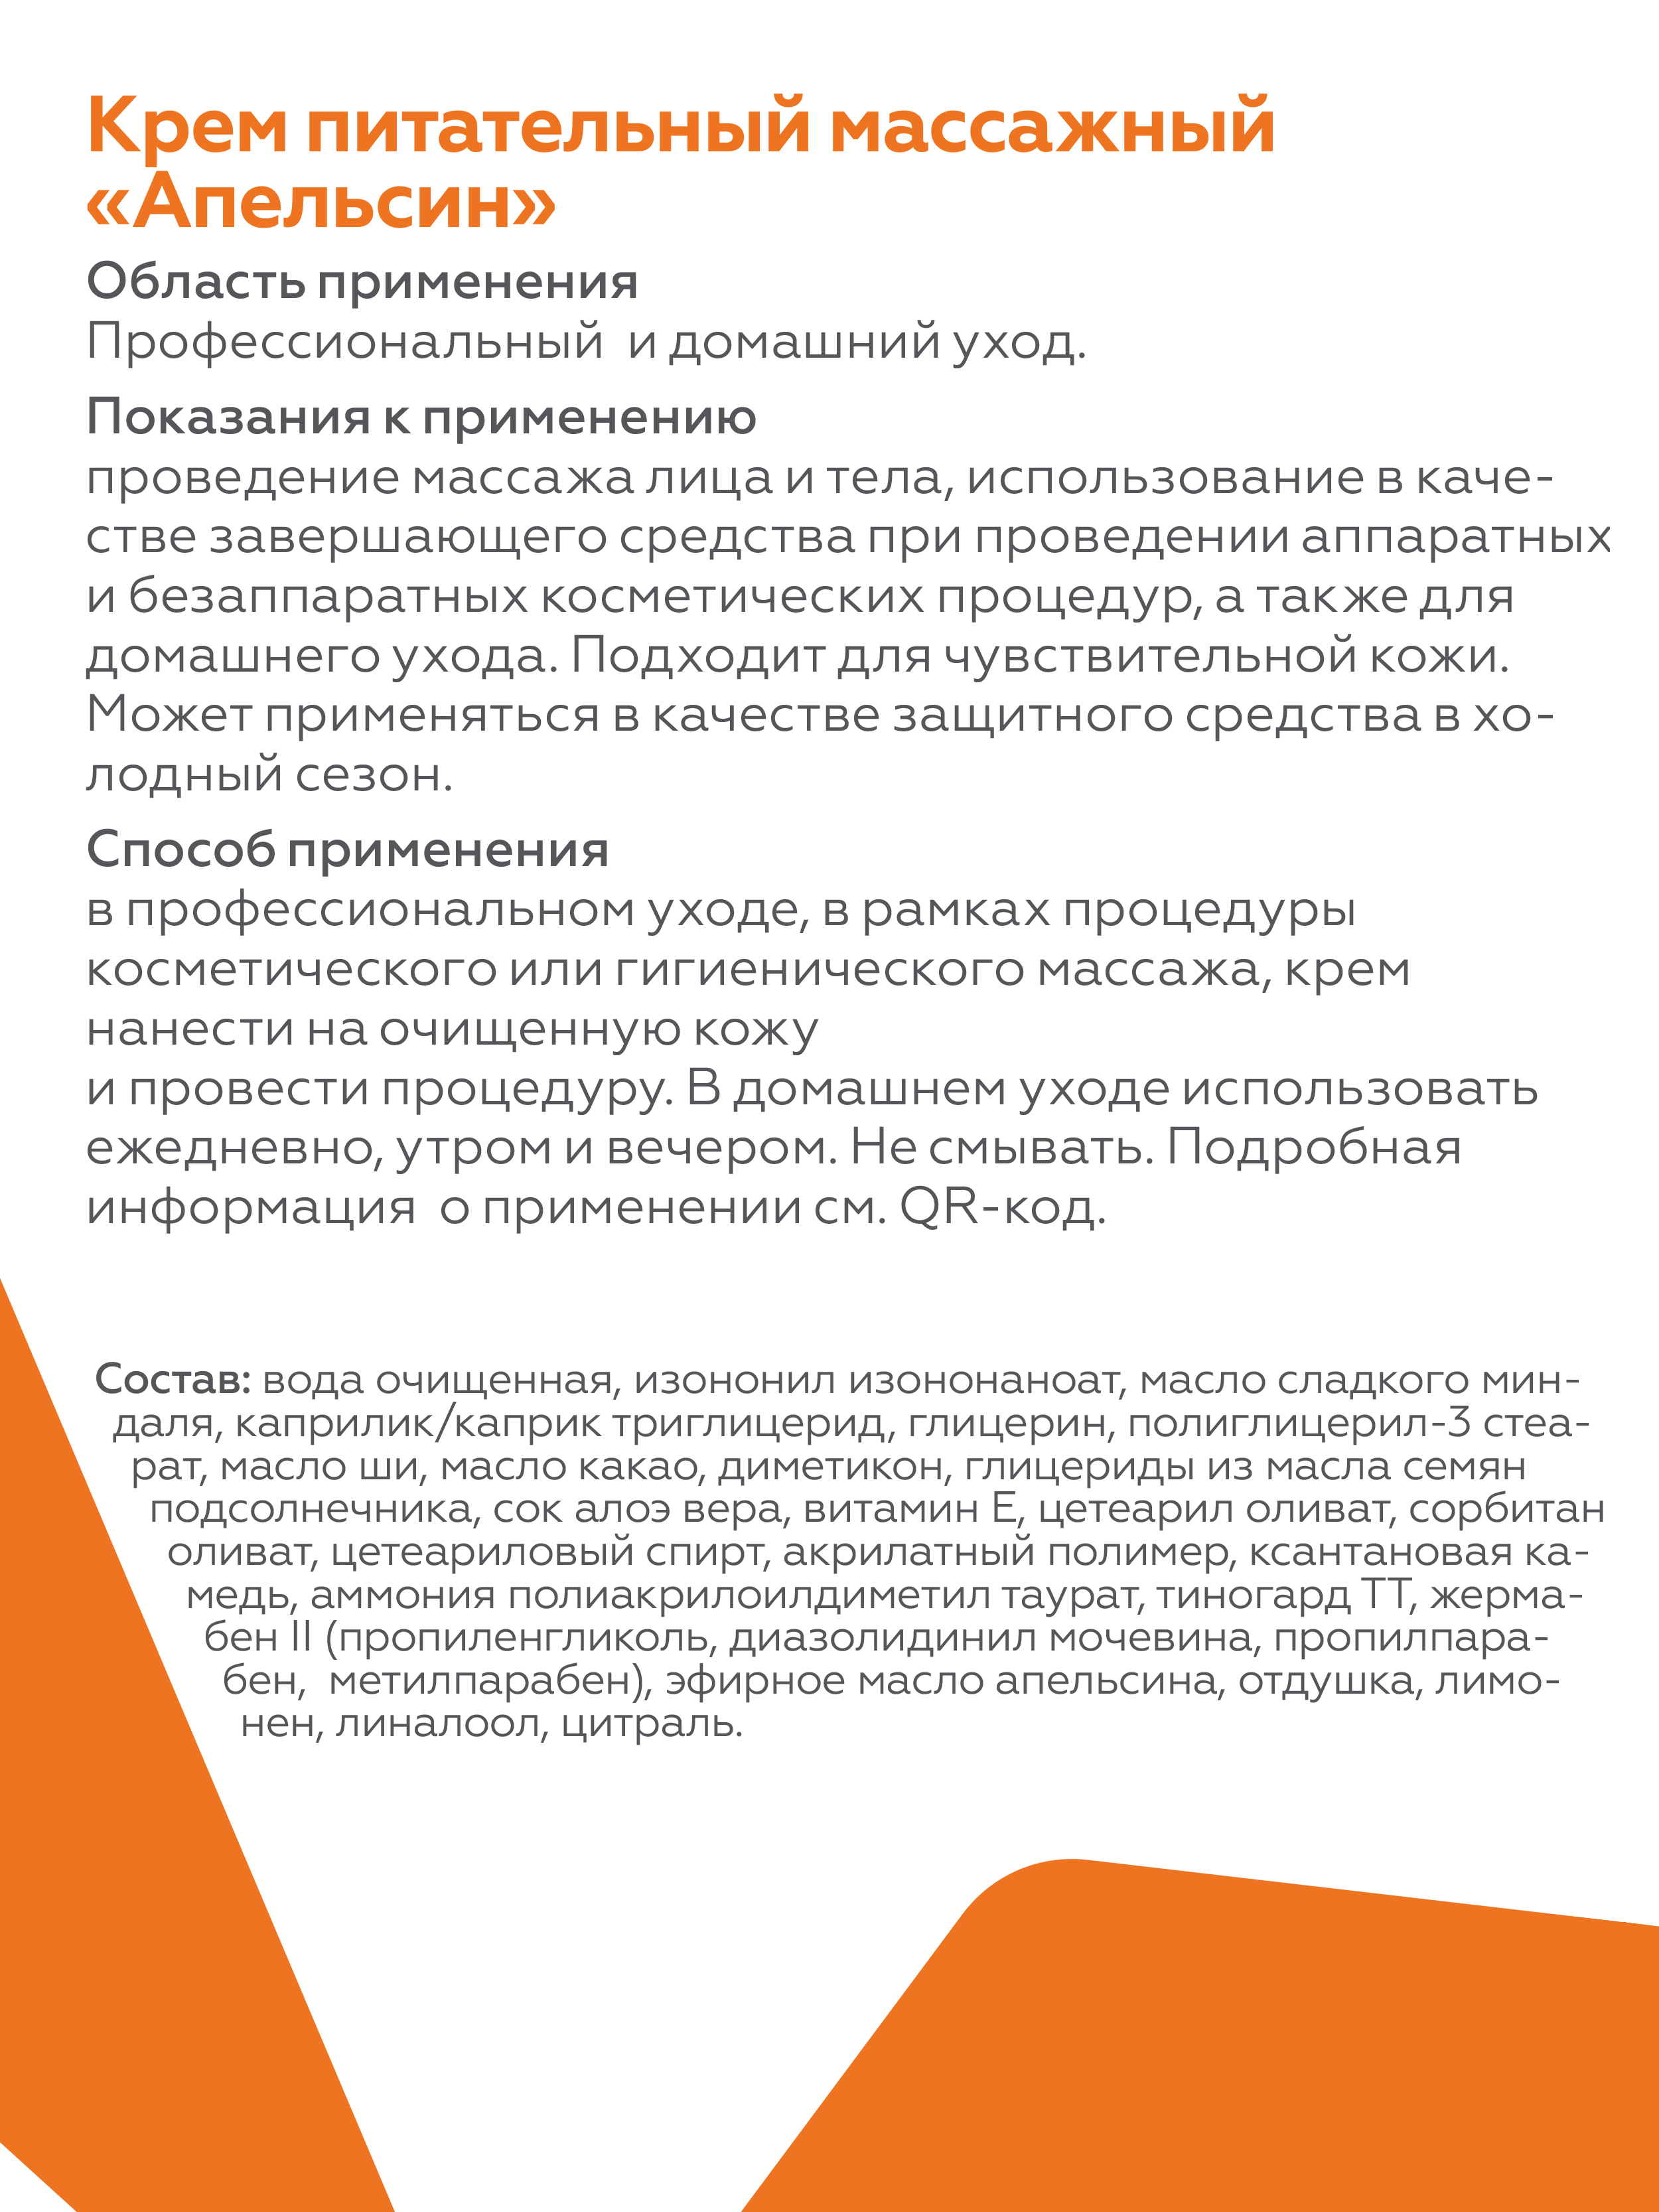 Крем для лица и тела Geltek Апельсин питательный массажный 100мл - в интернет-магазине tut-beauty.by